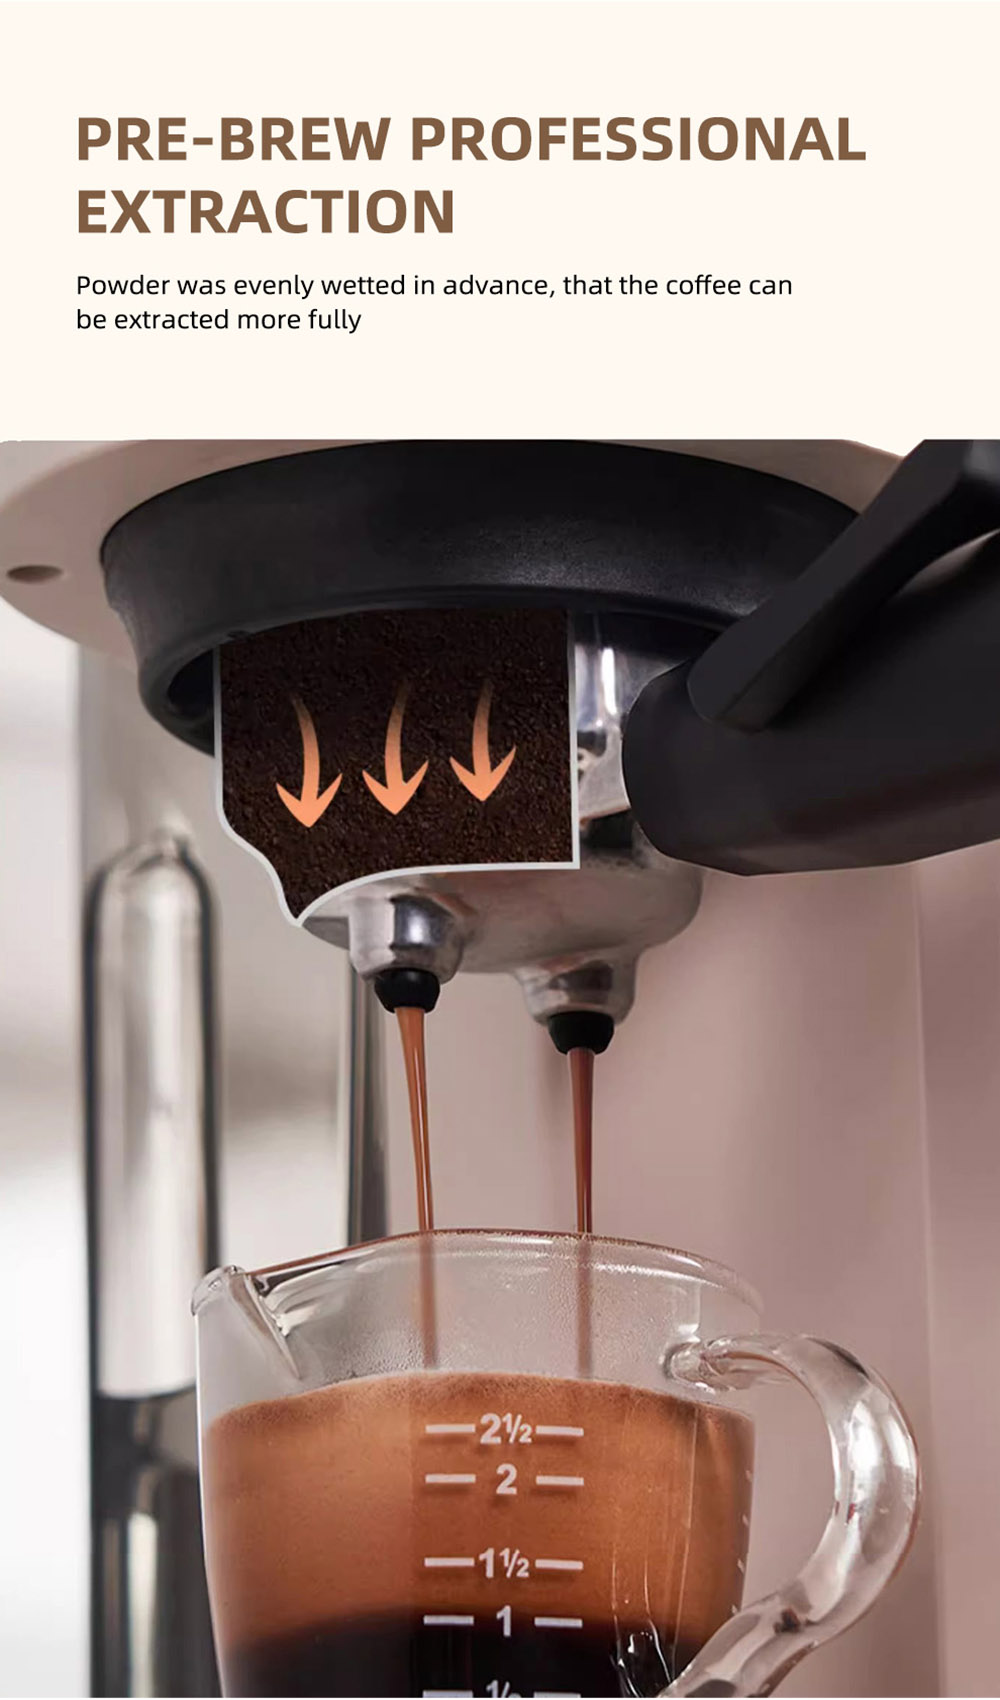 HiBREW H14 Espresso Koffiezetapparaat, 20 Bar Hoge Druk, Maalwerkinstelling met 15 versnellingen, Pre-brew Functie - Beige